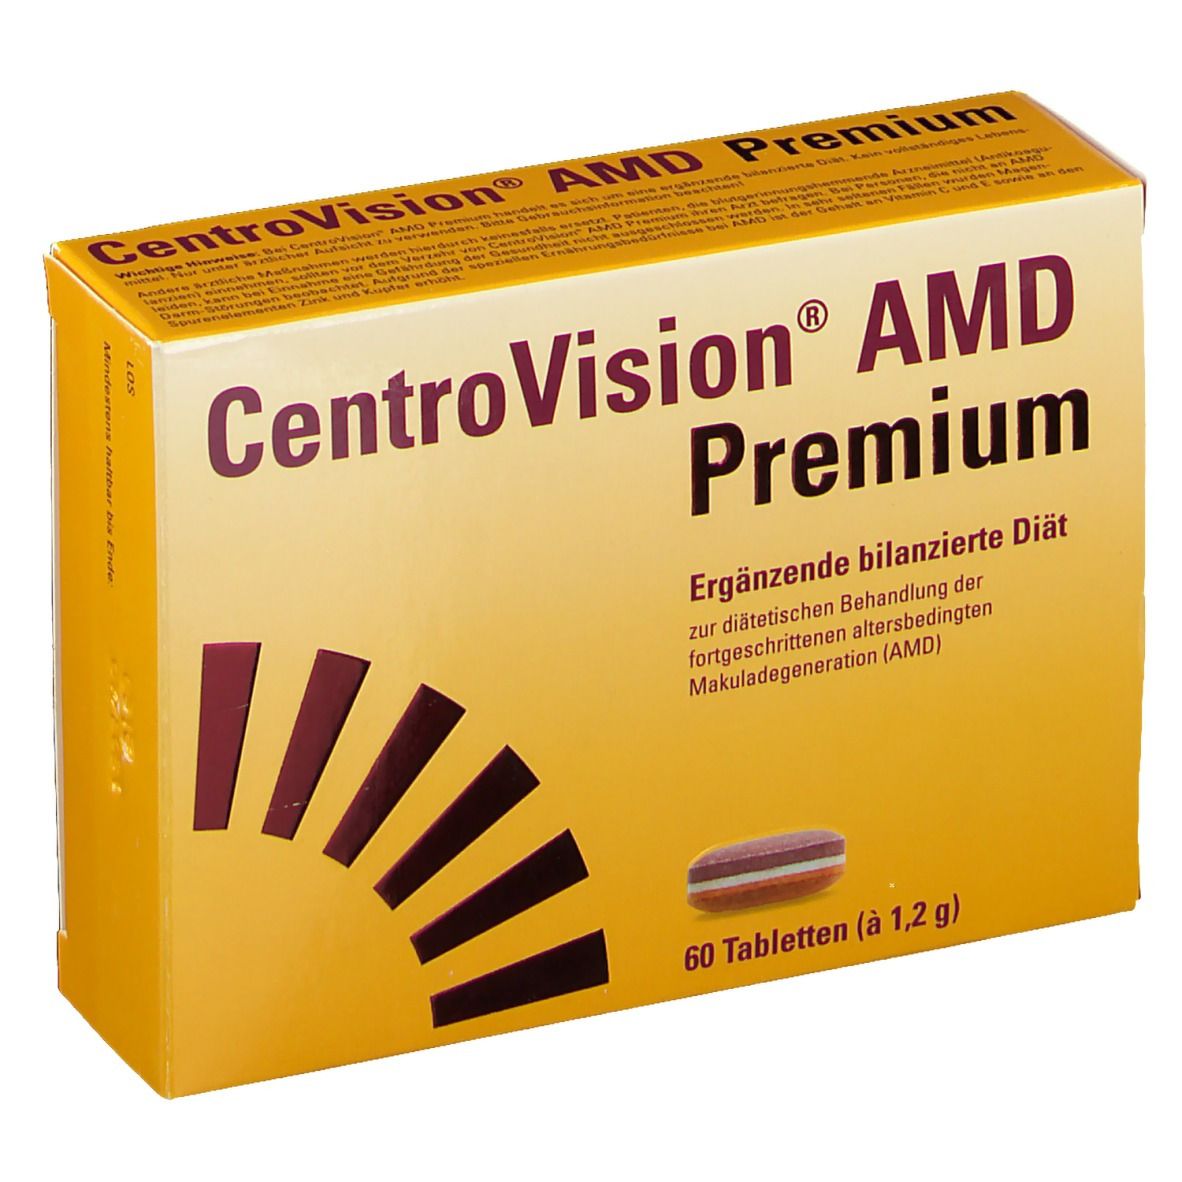 CentroVision® AMD Premium